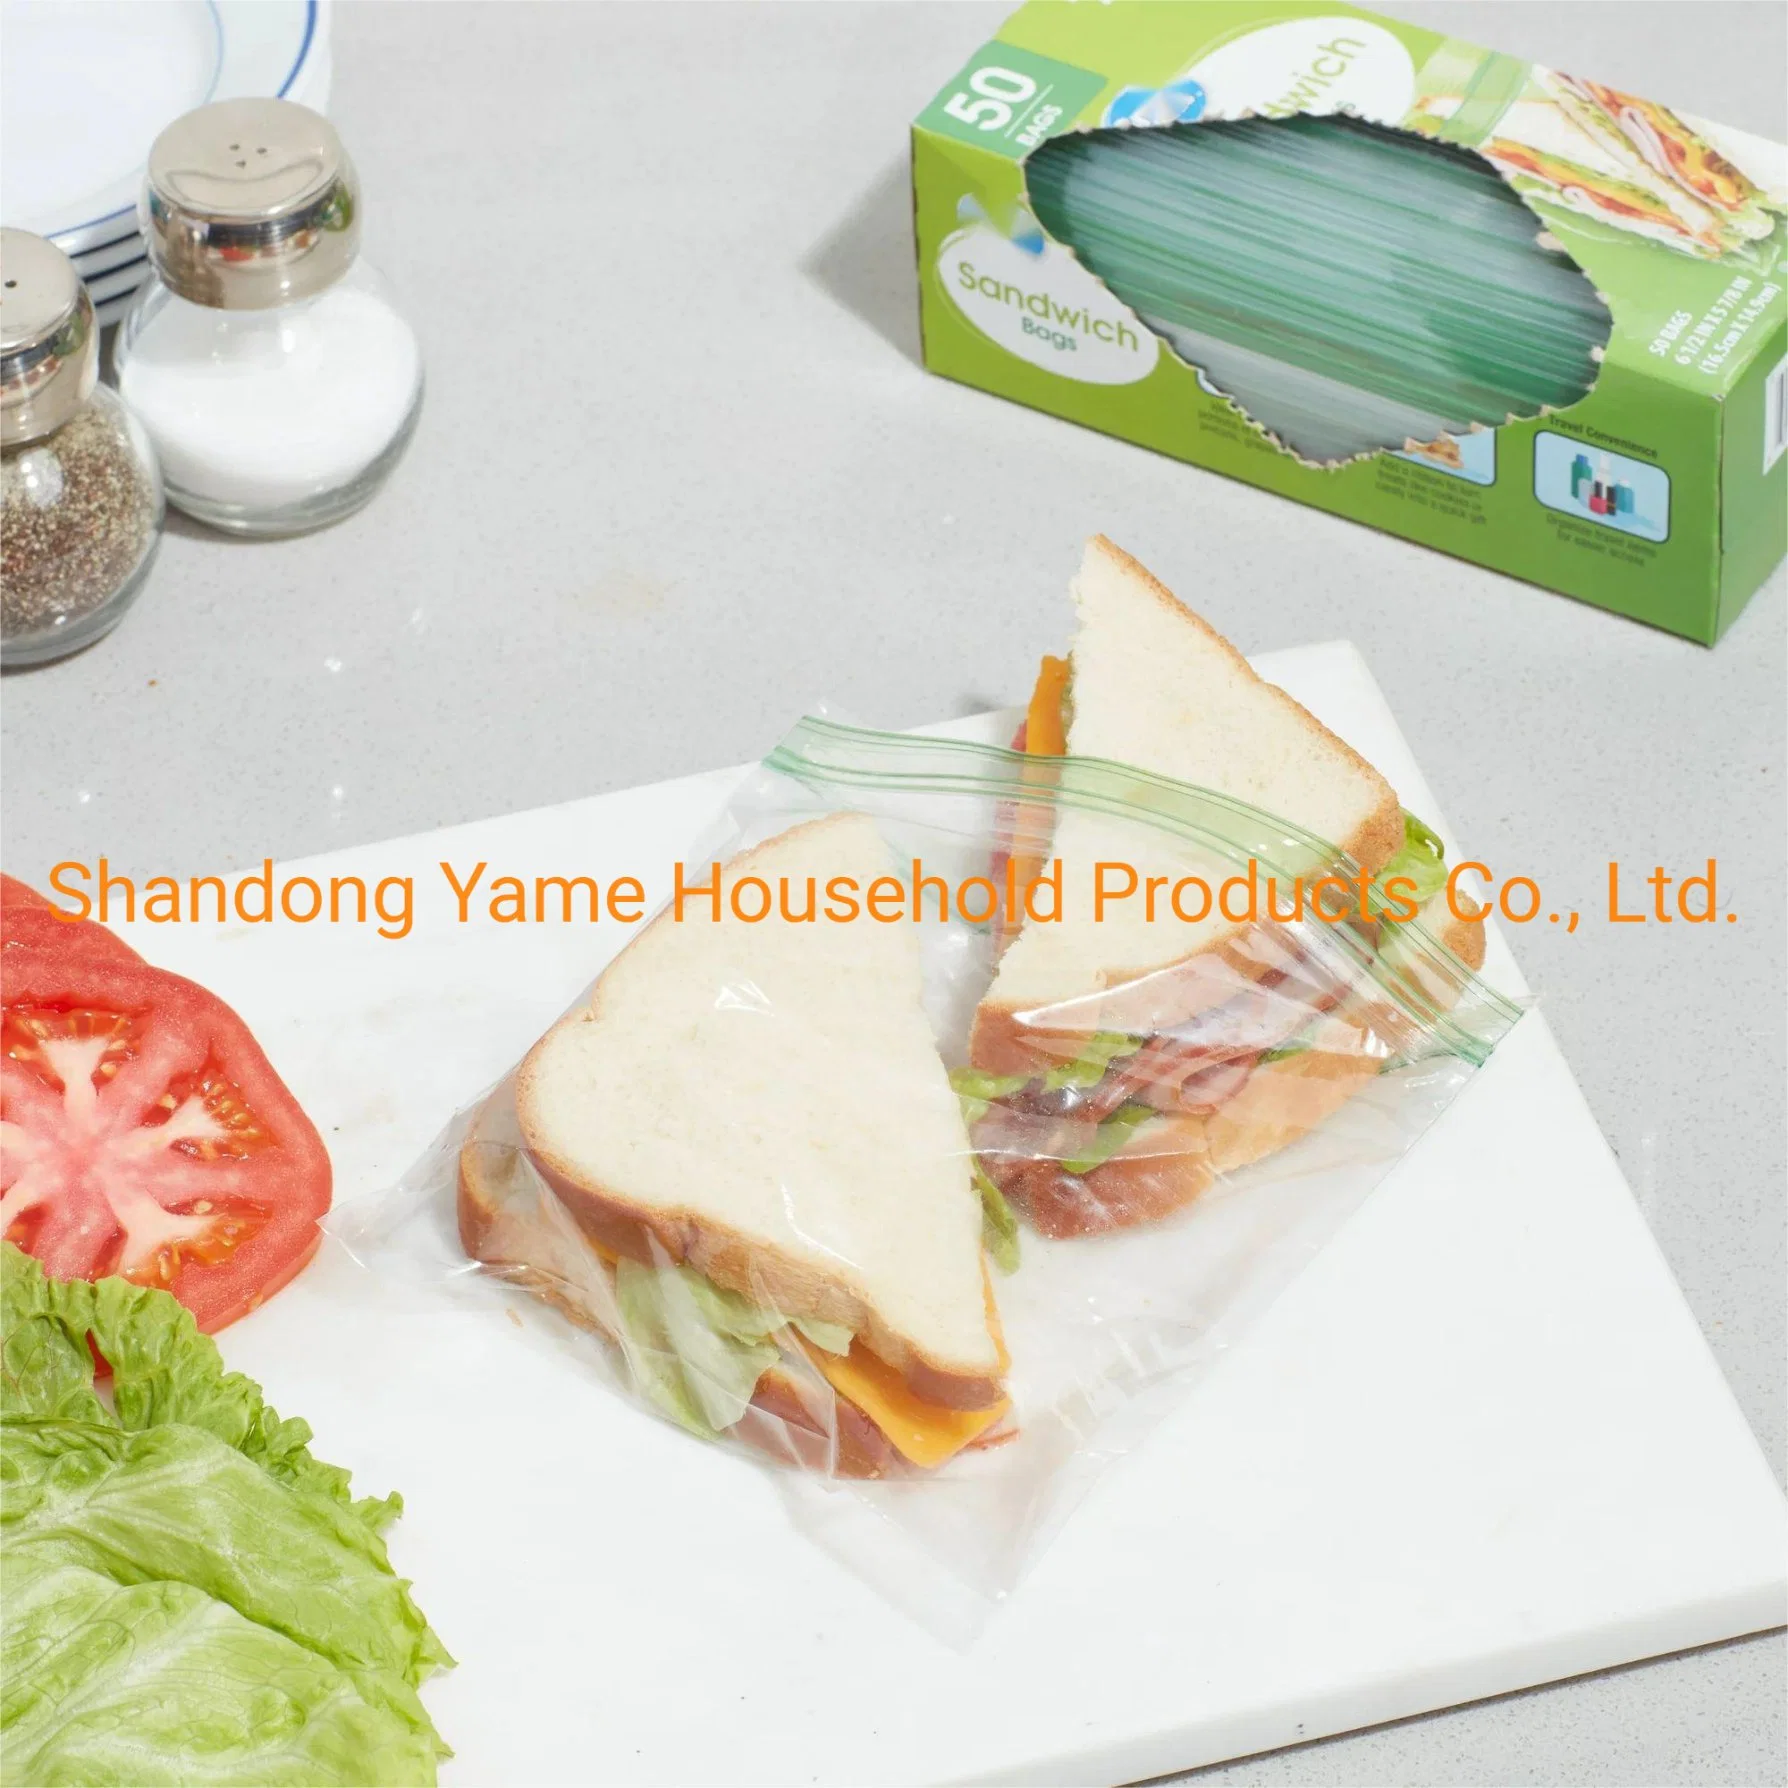 La FDA Bolsa Ziplock de plástico envases de alimentos de la bolsa de almacenamiento de alimentos de la bolsa de congelador Snack Bolsa Bolsa de Sandwich